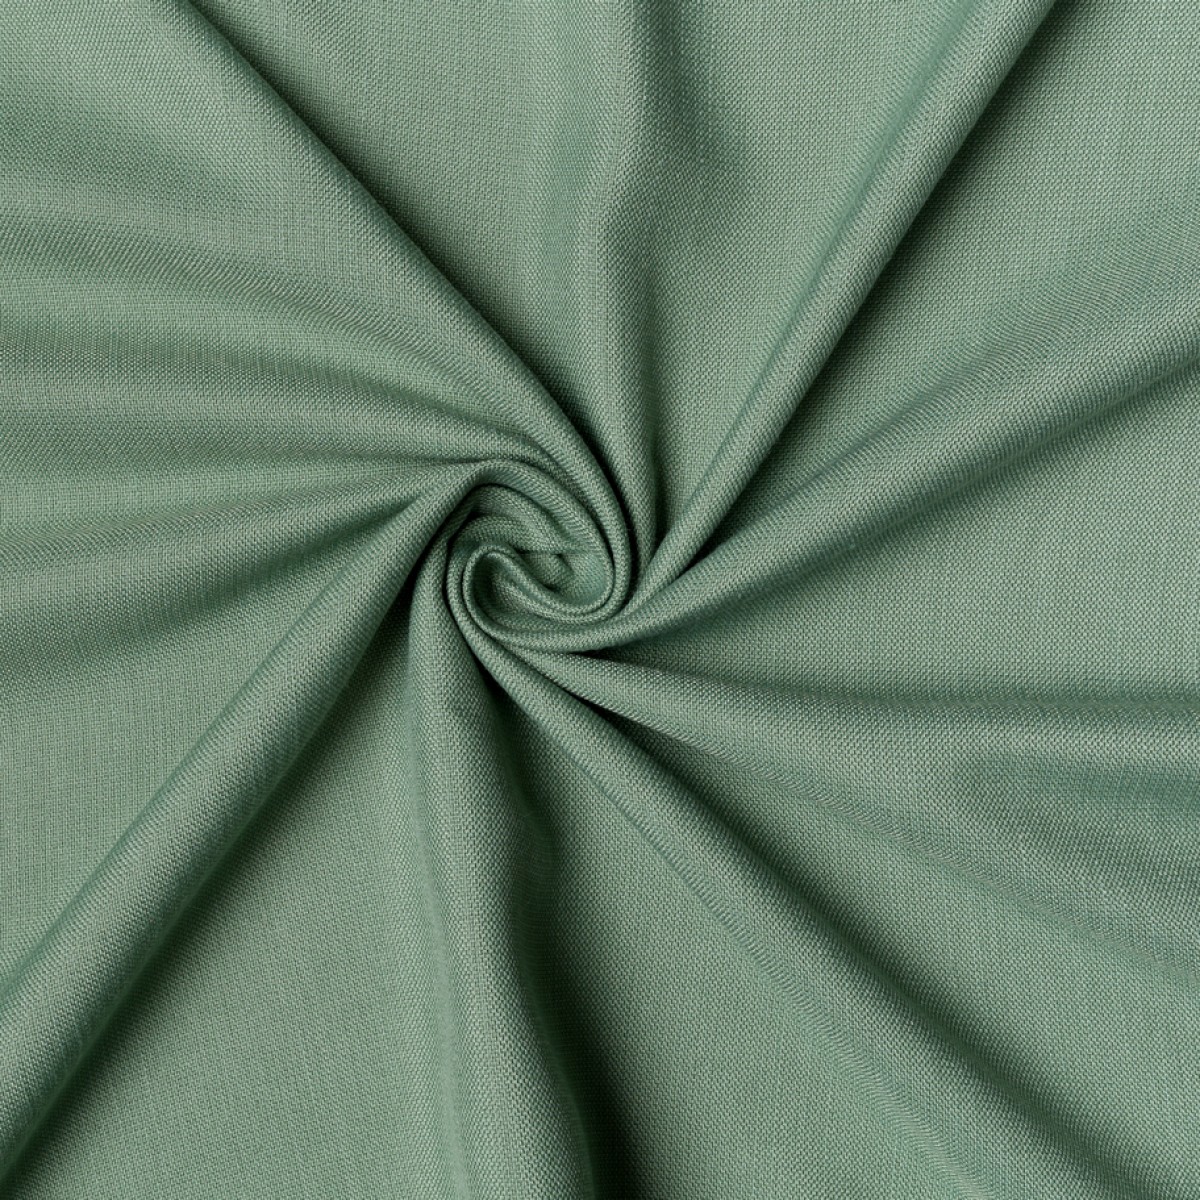 Draperii Mendola fabrics MDF-248-COVE. Conține culorile: Alb, Alb-Gri, Gri, Gri Grafit, Alb, Alb Papirus, Maro, Maro Măsliniu, Verde, Verde Reseda